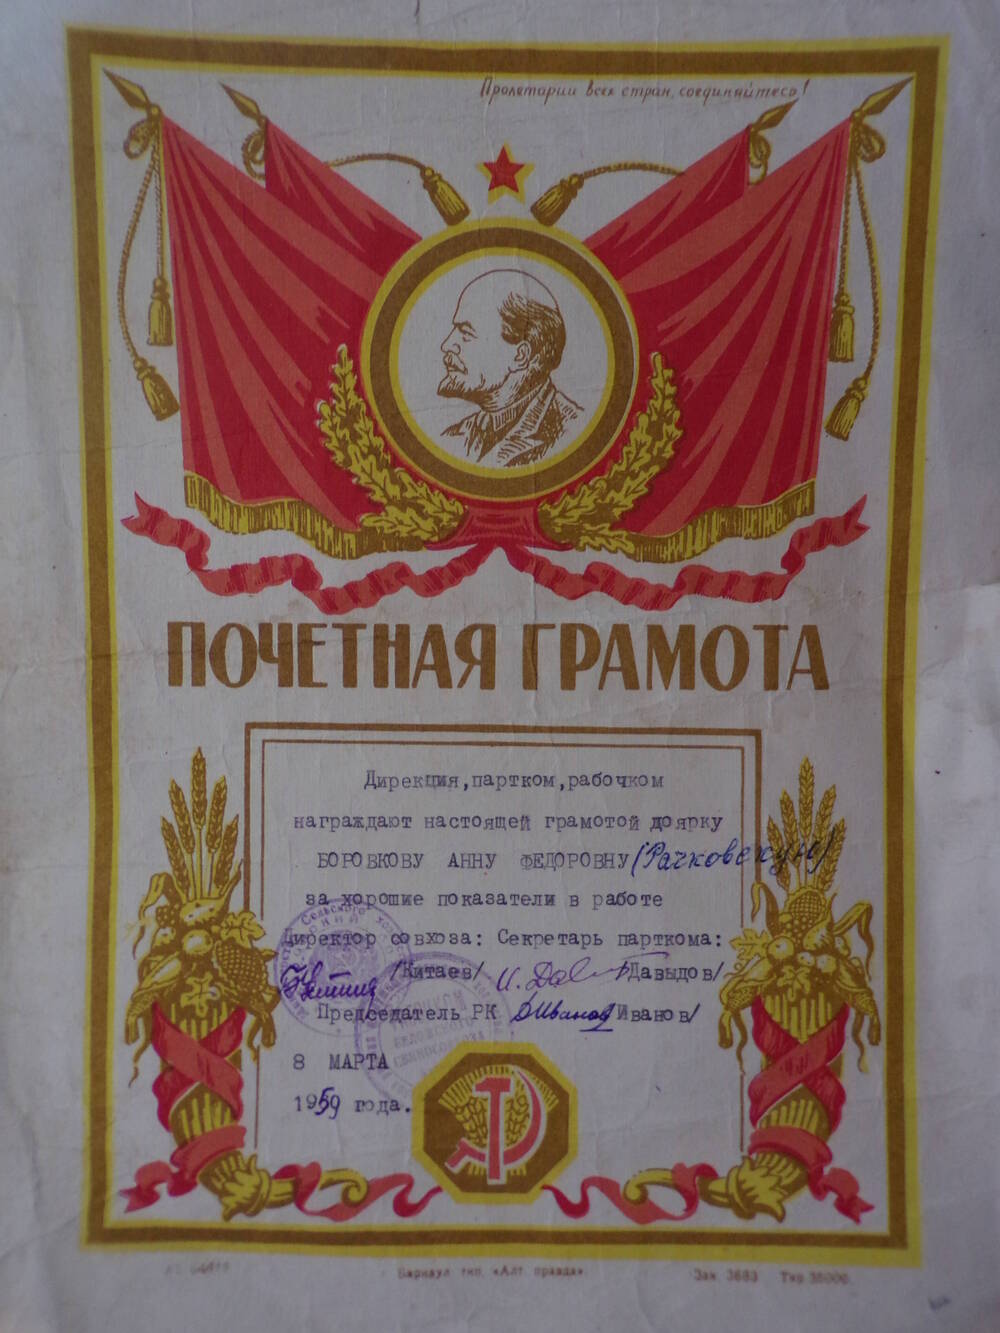 Почетная грамота Боровковой А.Ф.1959 г.